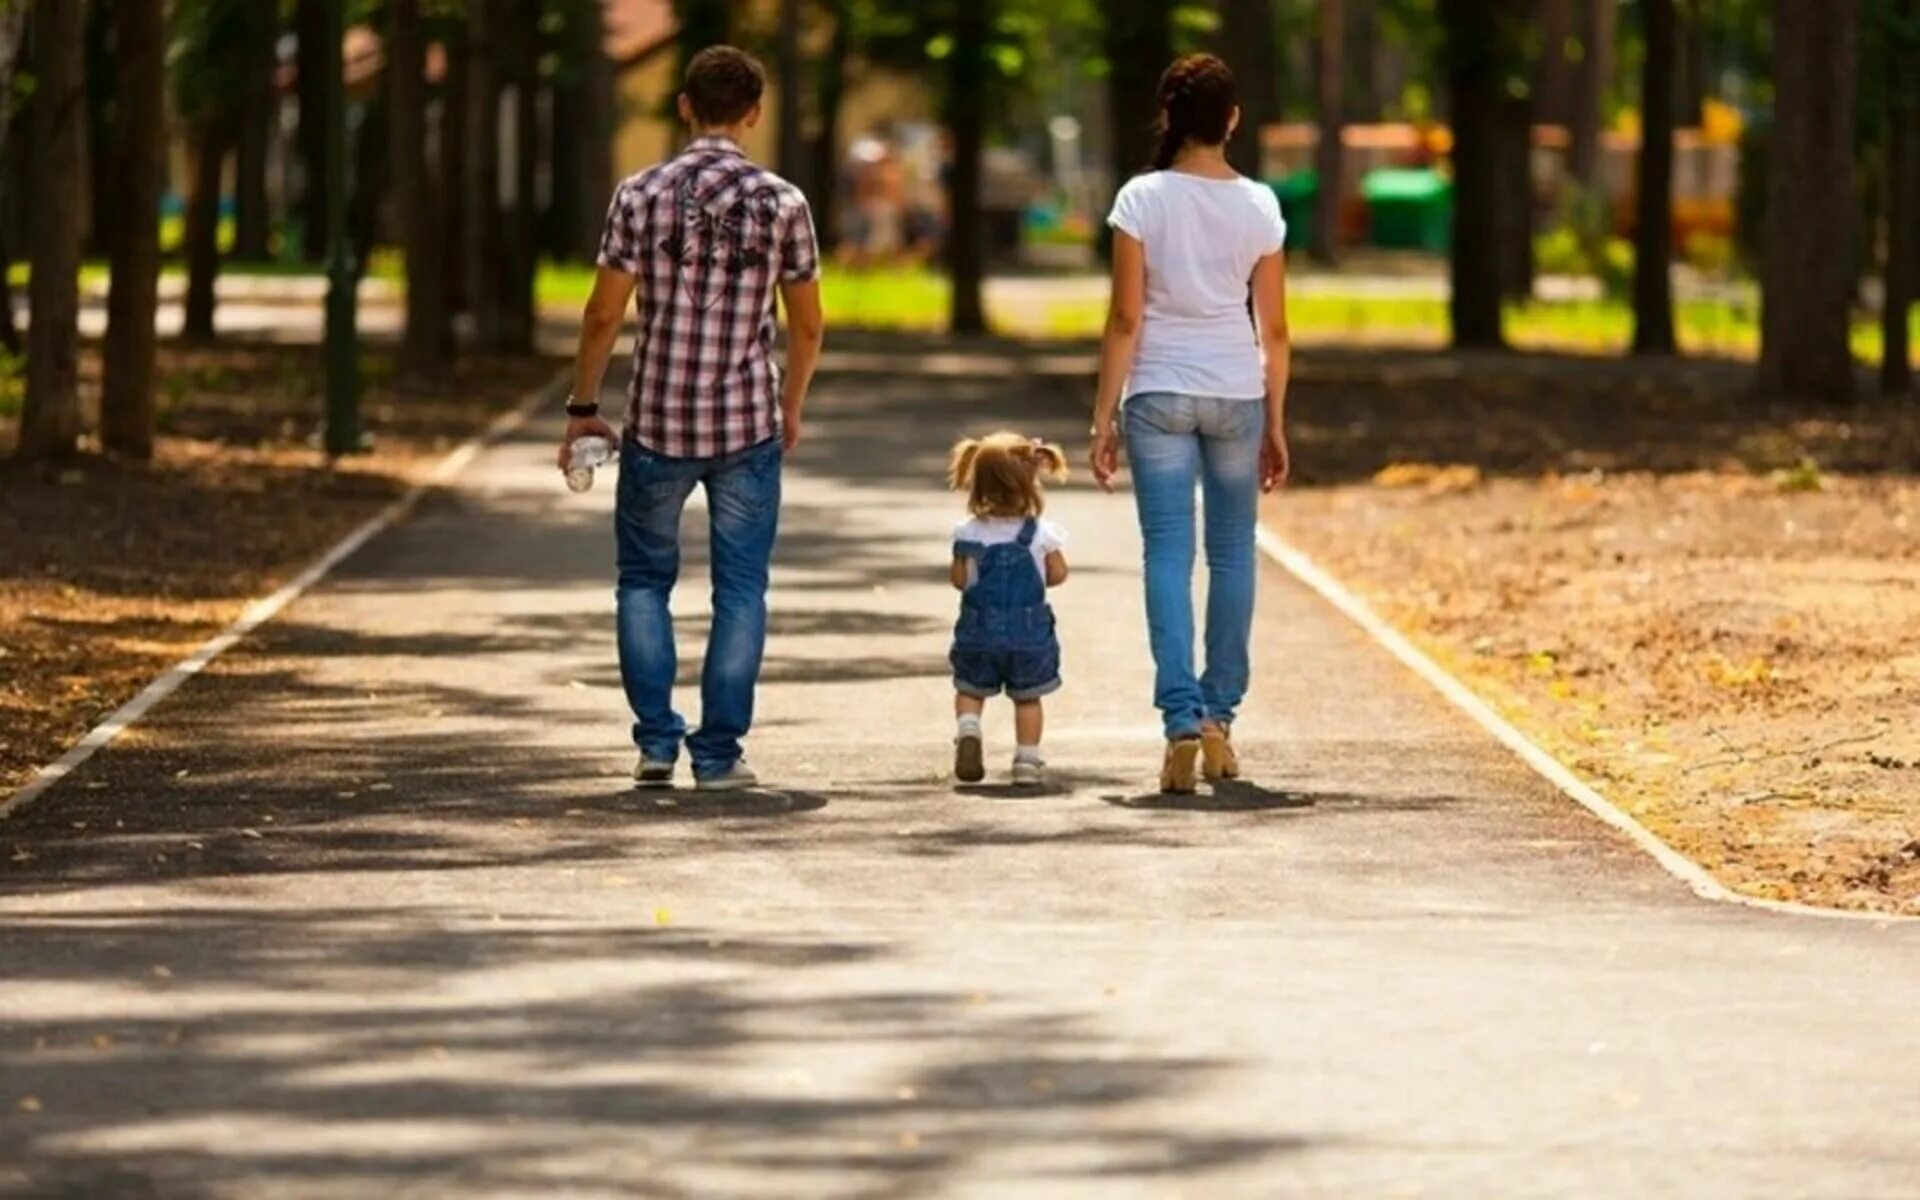 Гулять в парке. Прогулка. Прогулка в парке с детьми. Семья на прогулке. Мама пойдем в парк